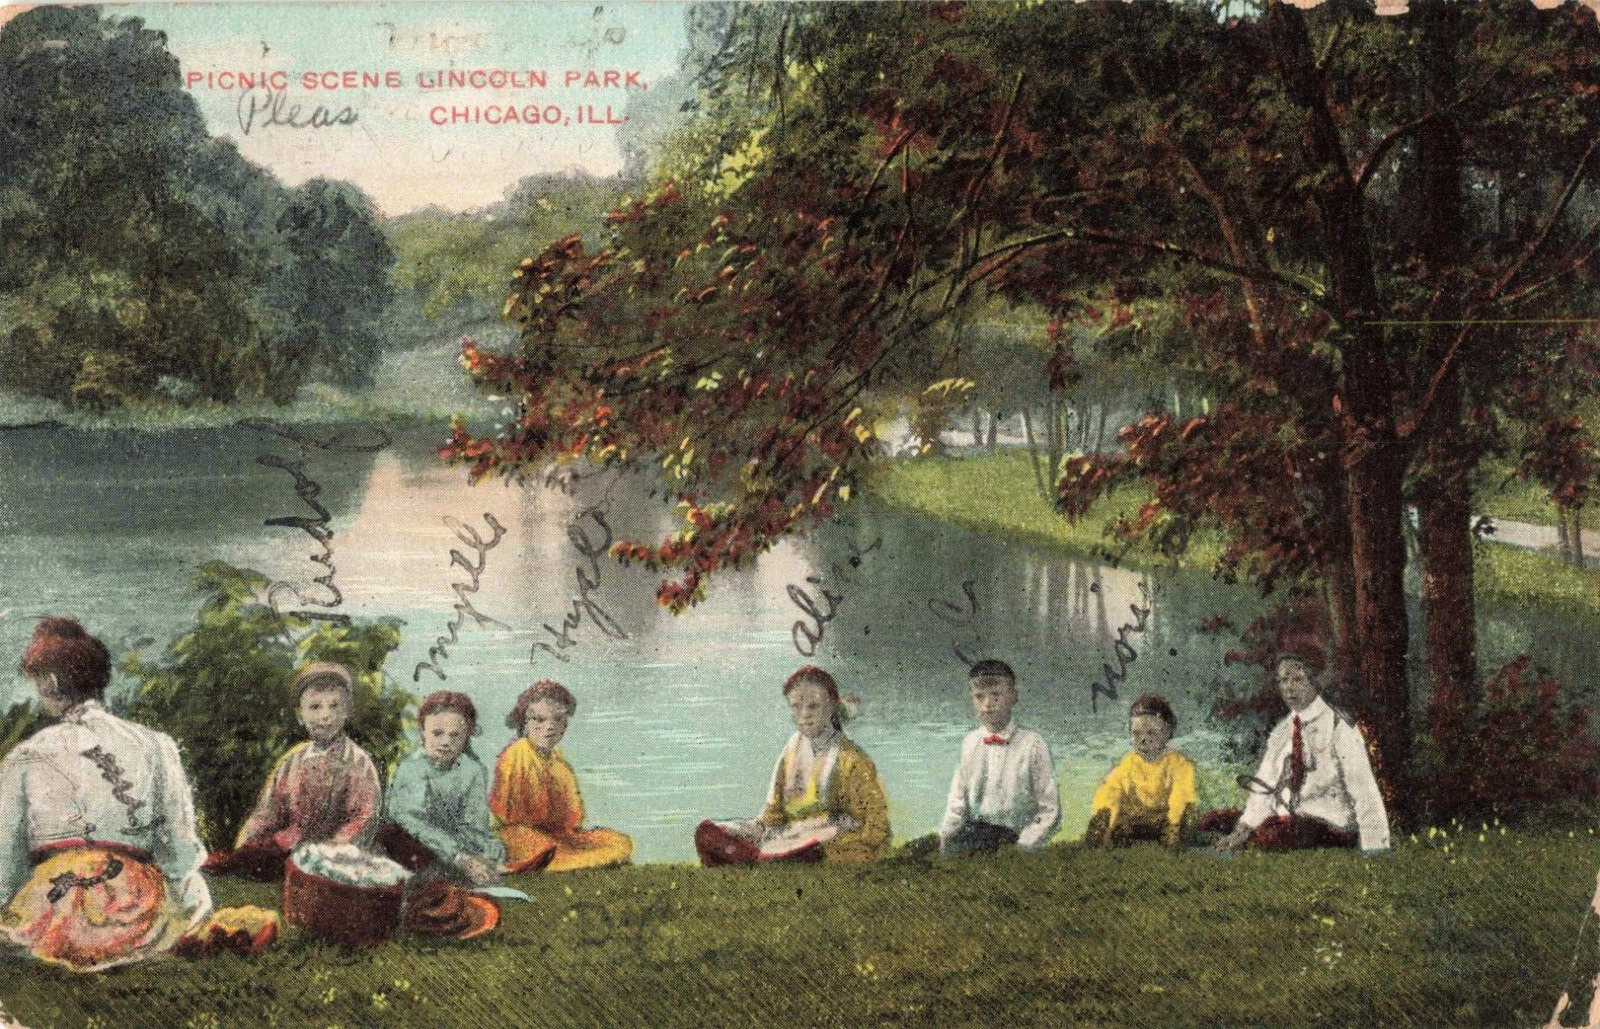 Chicago IL Illinois, Family Picnic Scene, Lincoln Park, Vintage Postcard